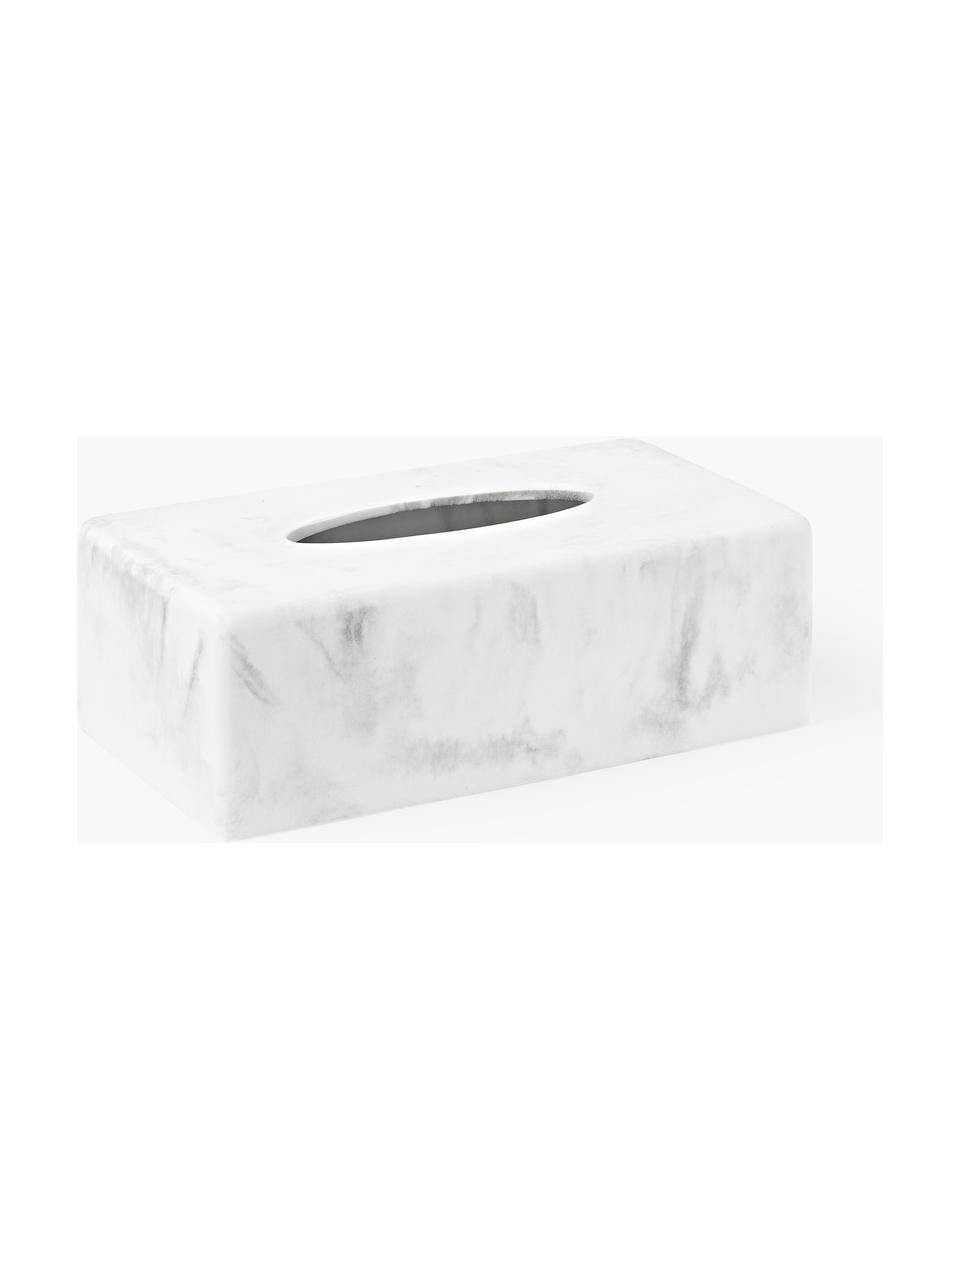 Krabička na kapesníky v mramorovém vzhledu Kyle, Polyresin, Bílý mramorový vzhled, Š 25 cm, H 14 cm